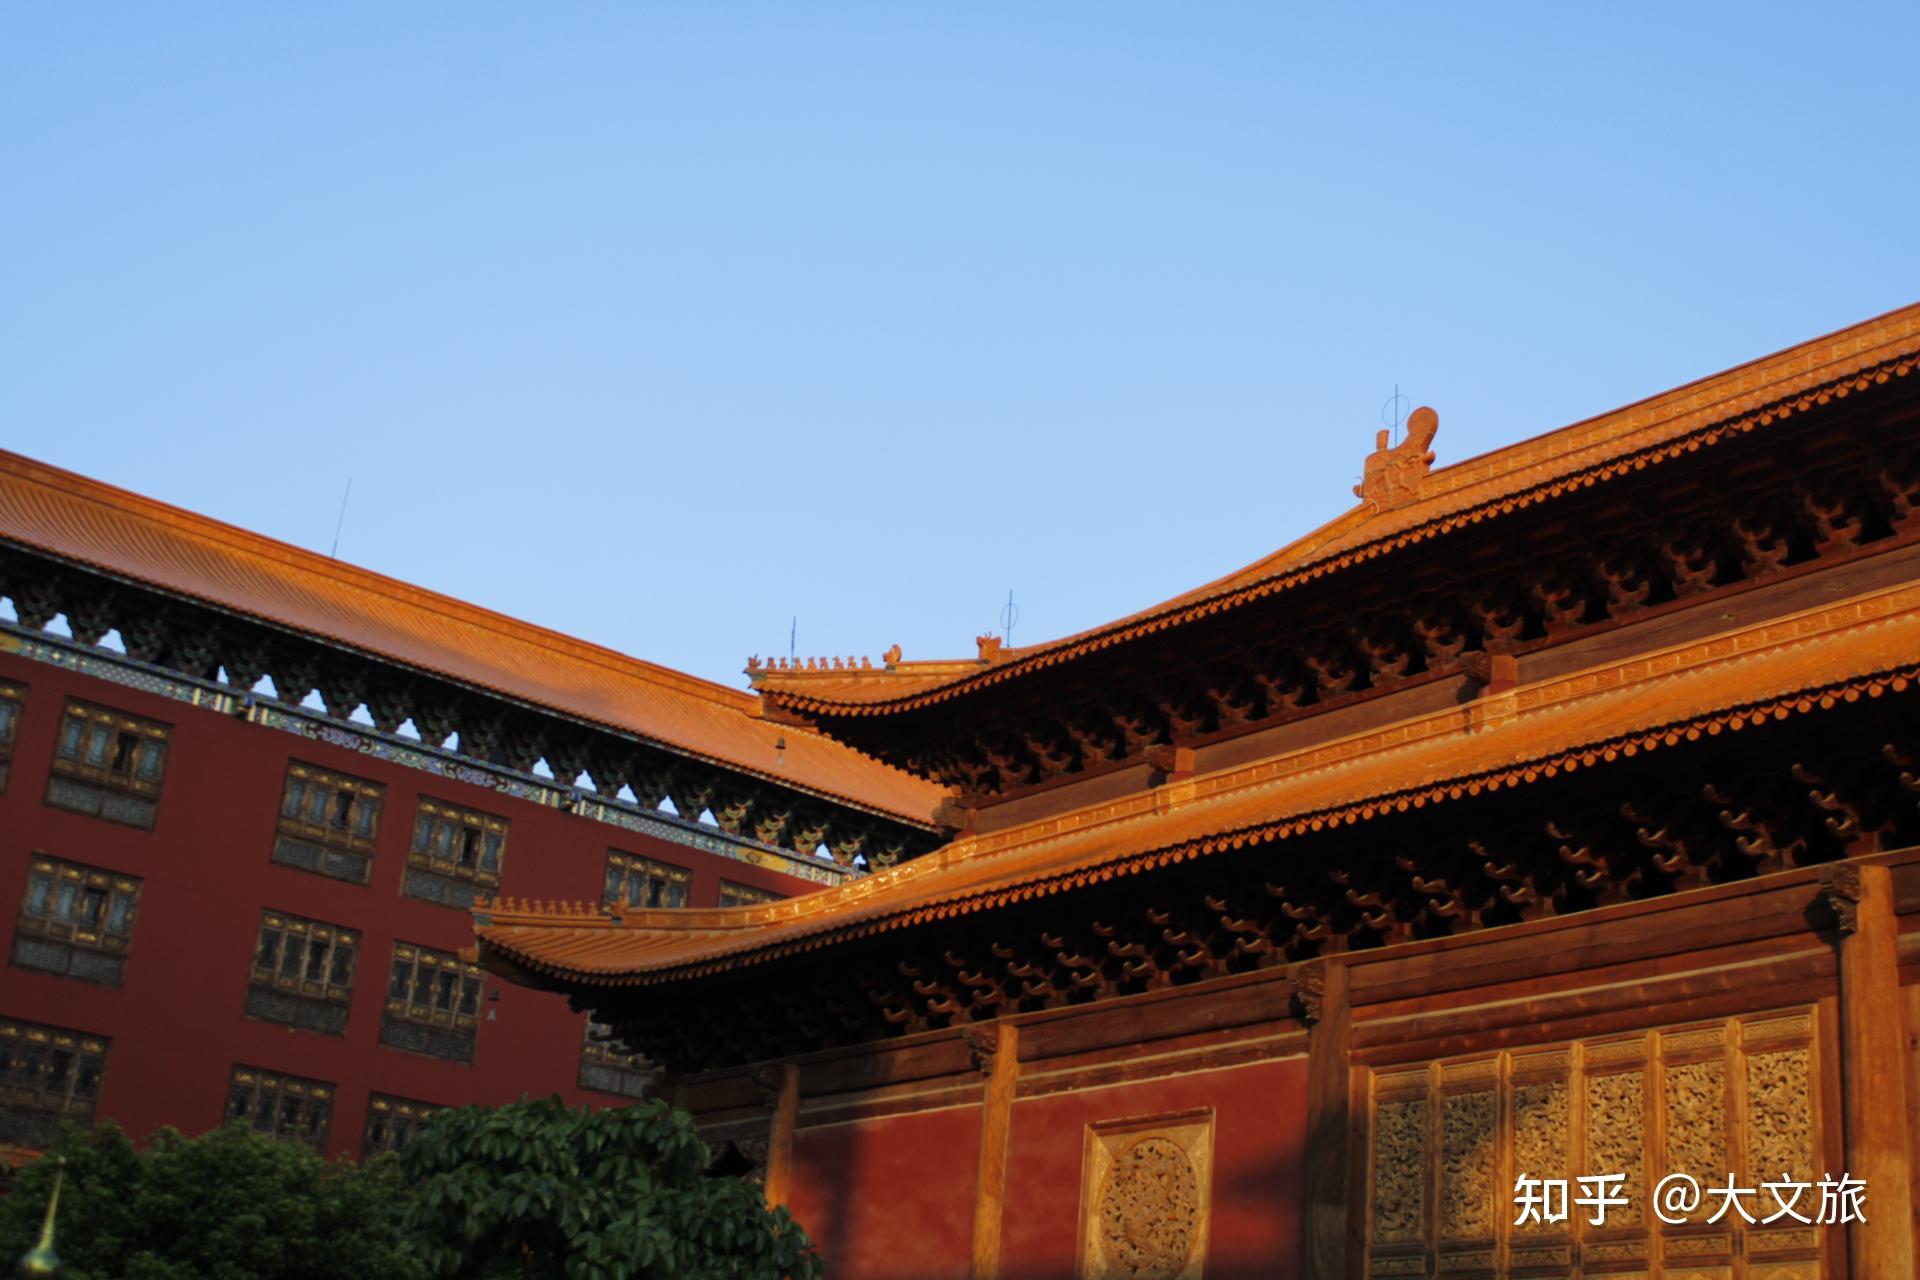 上海宝华寺图片、风景图集网友实景图_旅游图片 | 多文旅游网